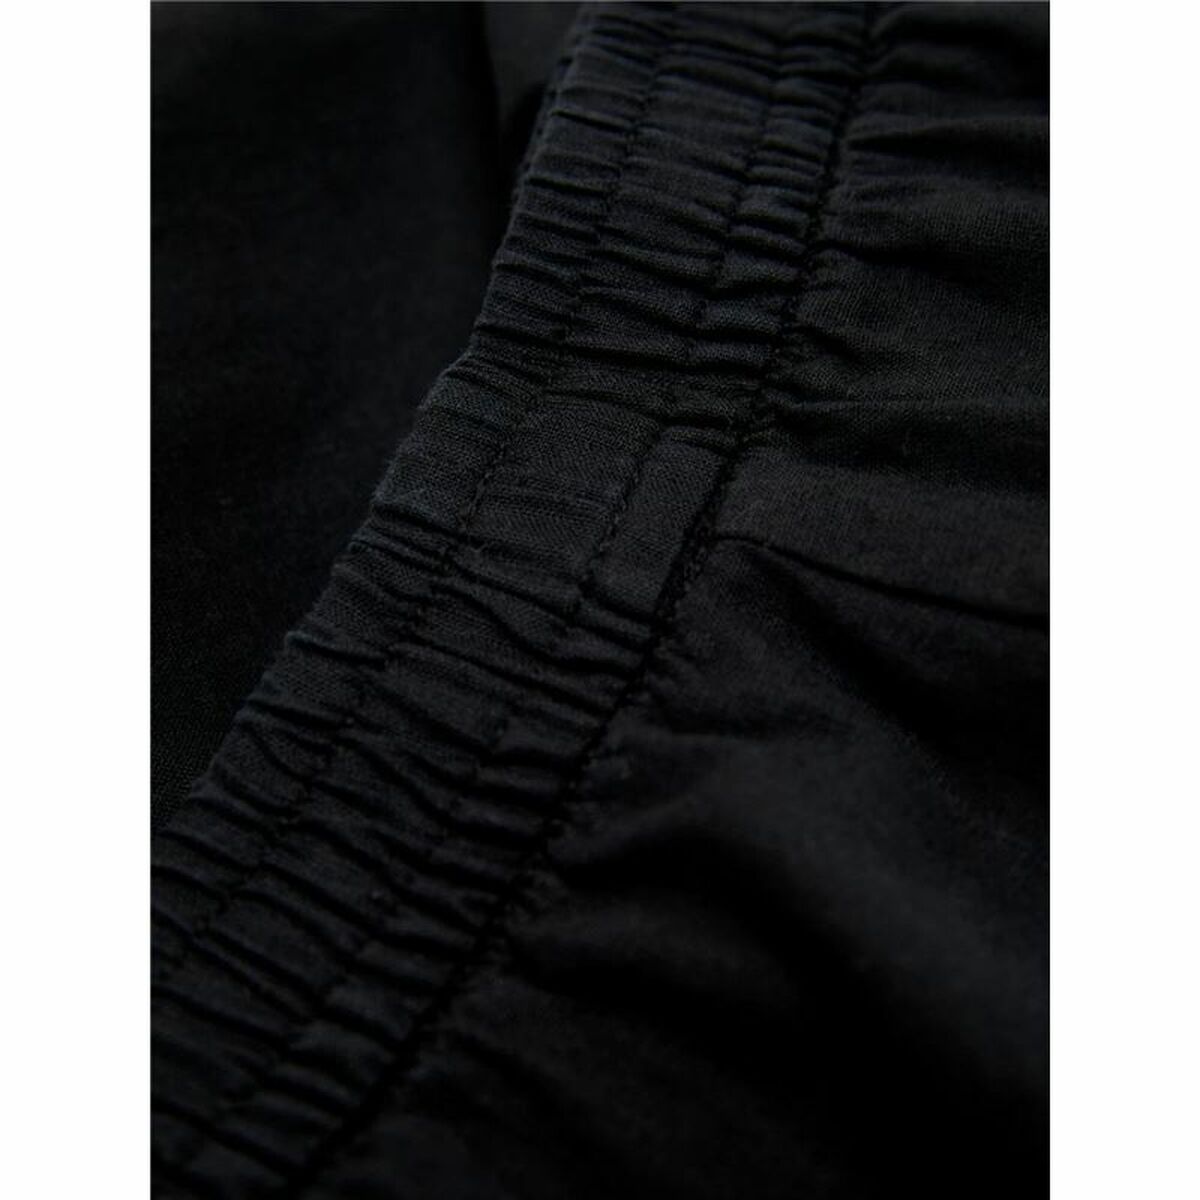 Pantalones Cortos Deportivos para Mujer Jack & Jones Negro Lino